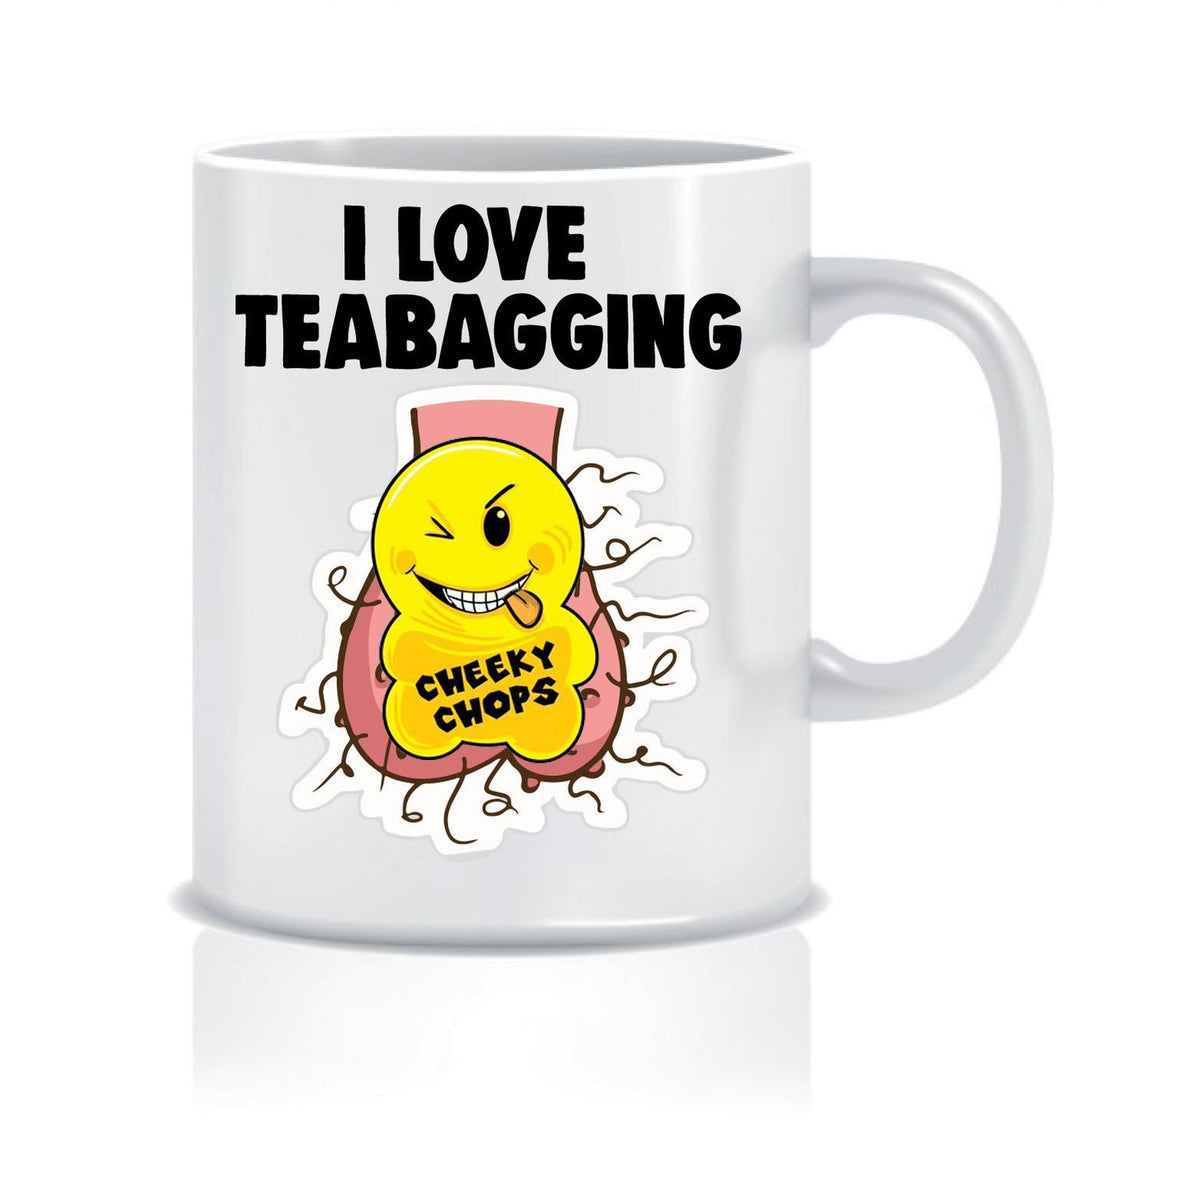 Teabagging Pic